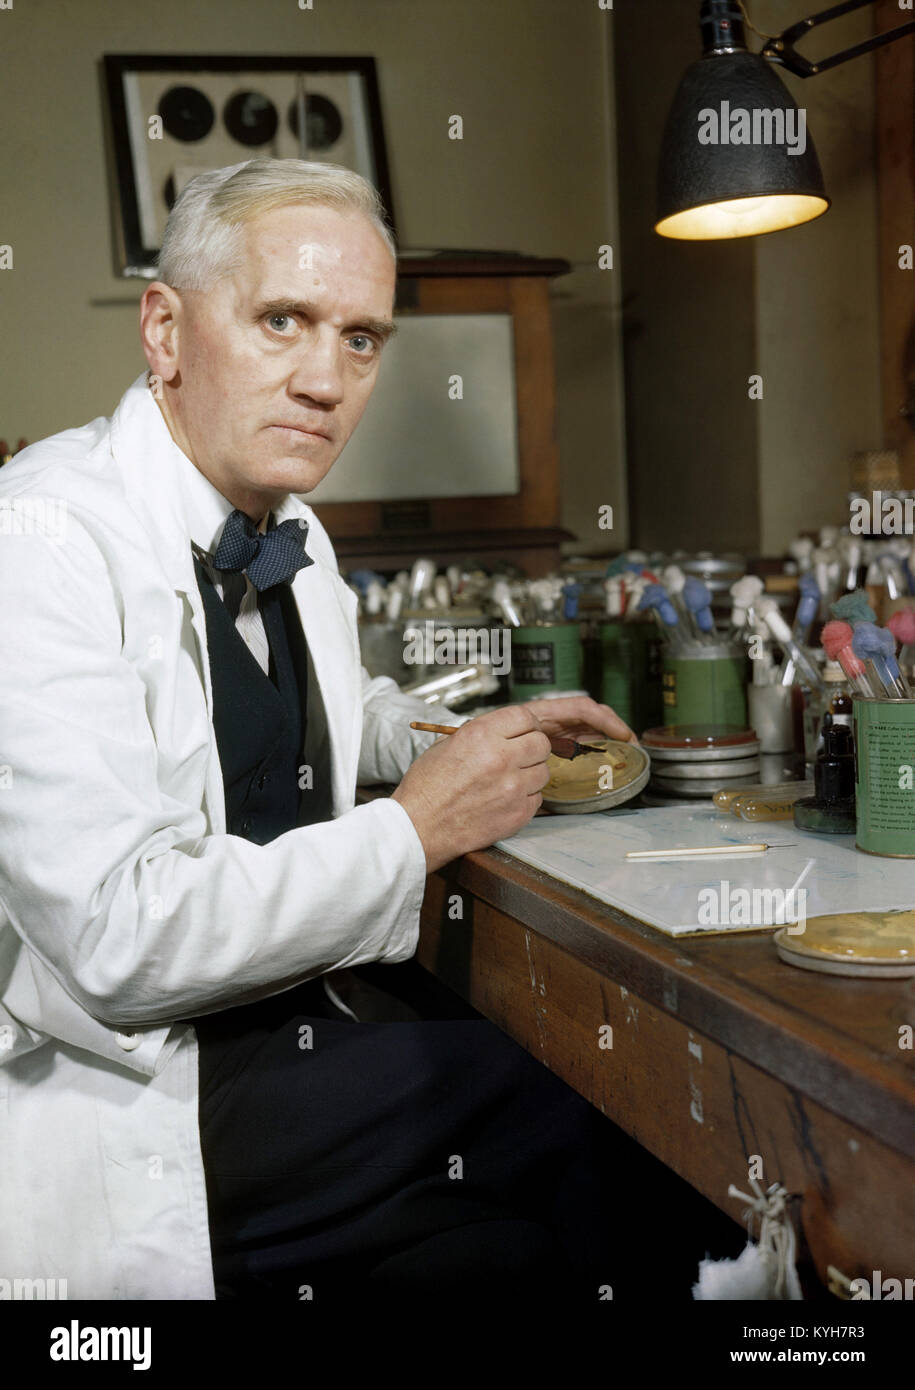 Alexander Fleming, synthetischen Herstellung von Penicillin Professor Alexander Fleming, der zunächst die Form Penicillin Notatum entdeckt Stockfoto